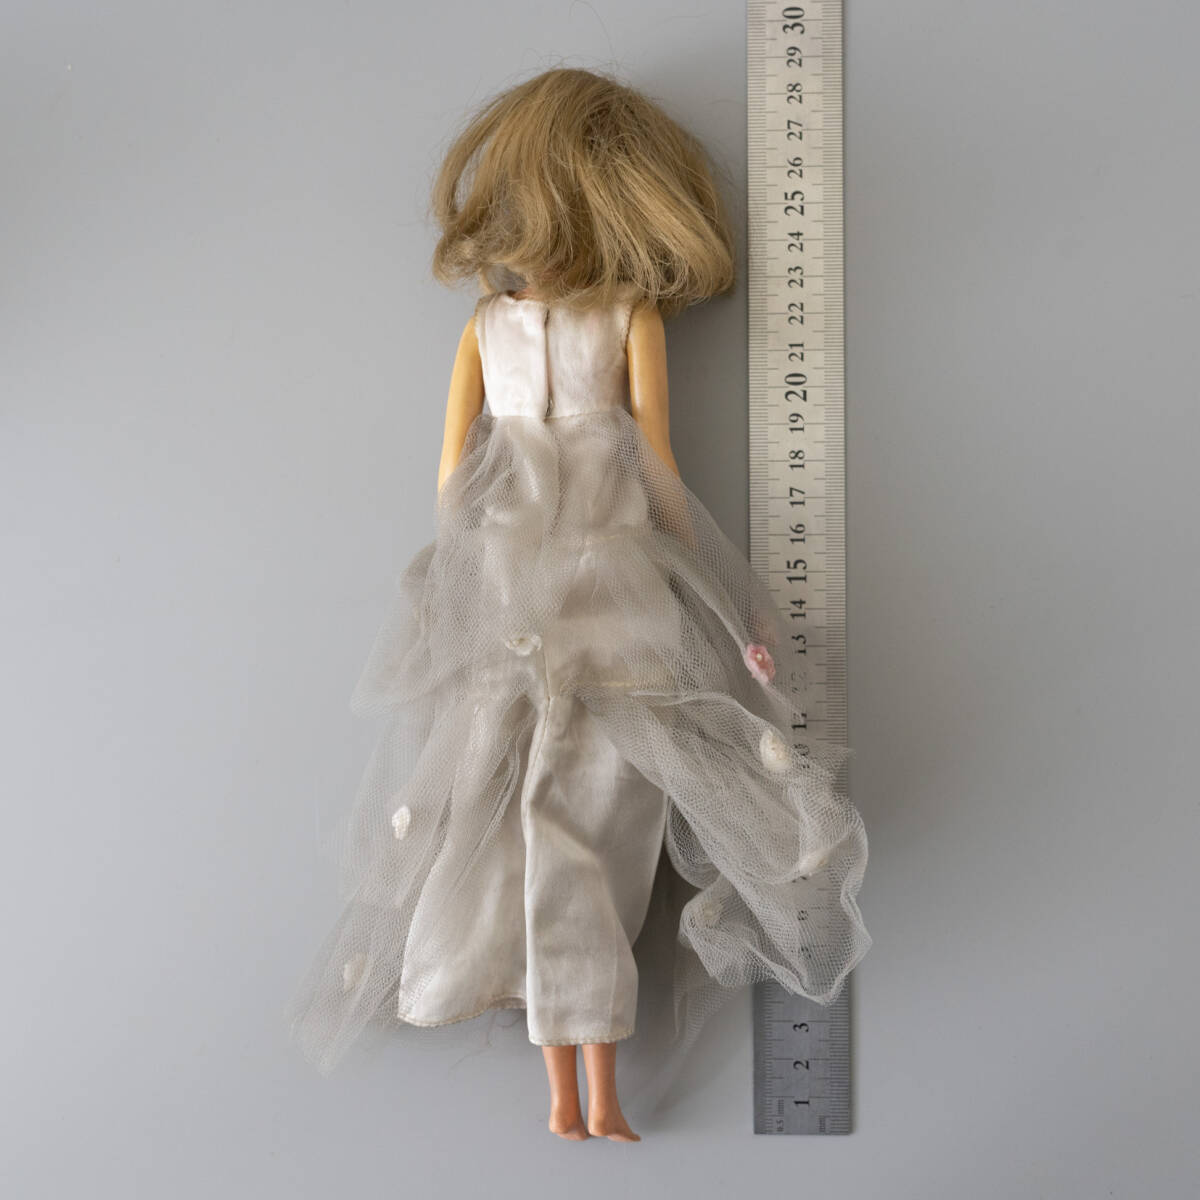 フランシー ? FRANCIE ? 1965年 MATTEL マテル社 服小物 他 セット ビンテージ バービー人形 フィギュア ドール 人形の画像4